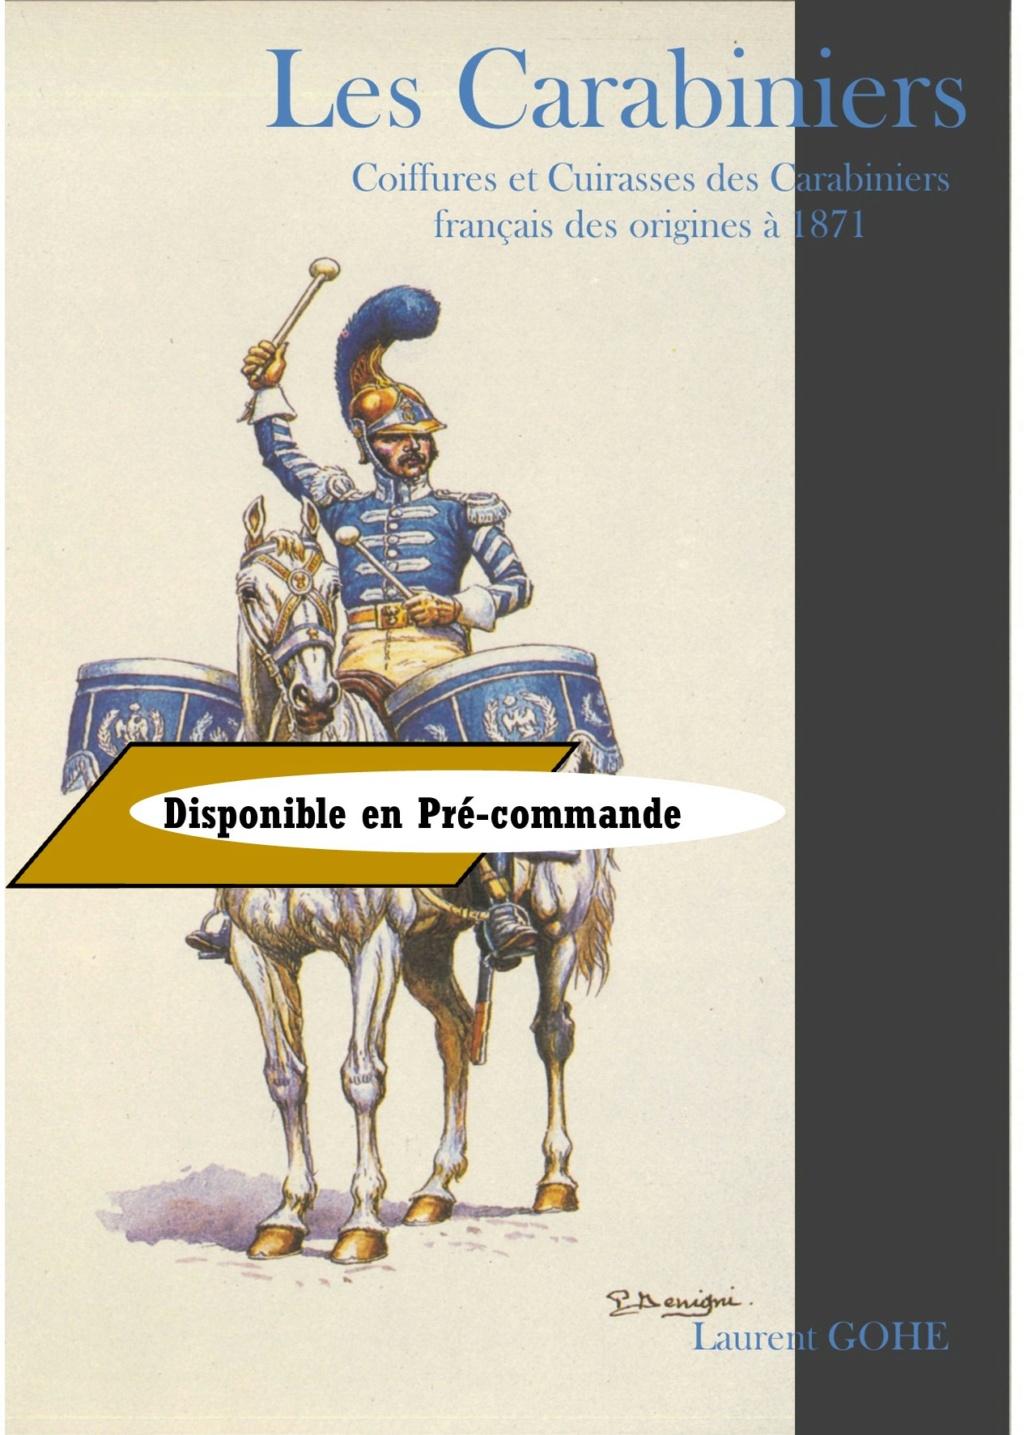 Coiffures et cuirasses des Carabiniers français, des origines à 1871 - Gohé L. 27389610